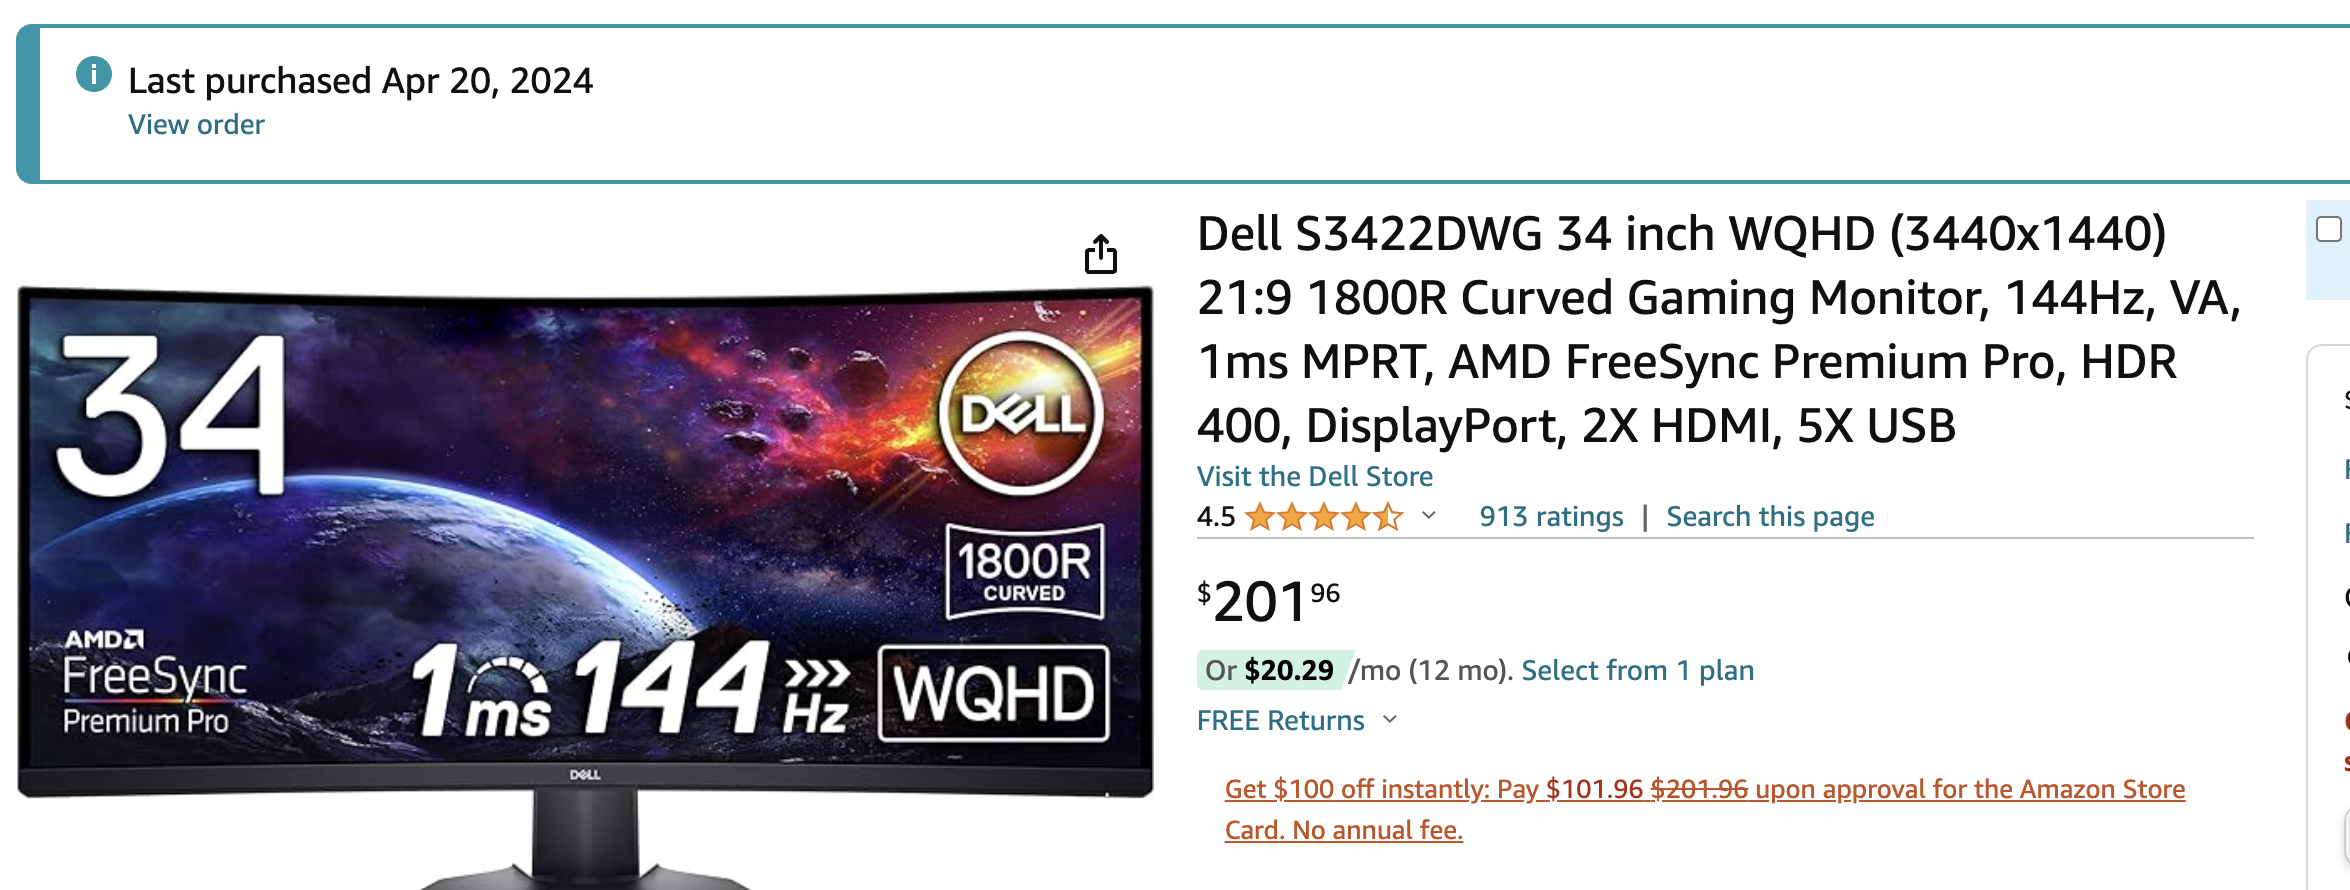 Dell S3422DWG 34 inch WQHD (3440x1440) 21:9 1800R Curved Gaming Monitor, 144Hz, VA, 1ms MPRT, AMD FreeSync Premium Pro, HDR 400, DisplayPort, 2X HDMI, 5X USB $201